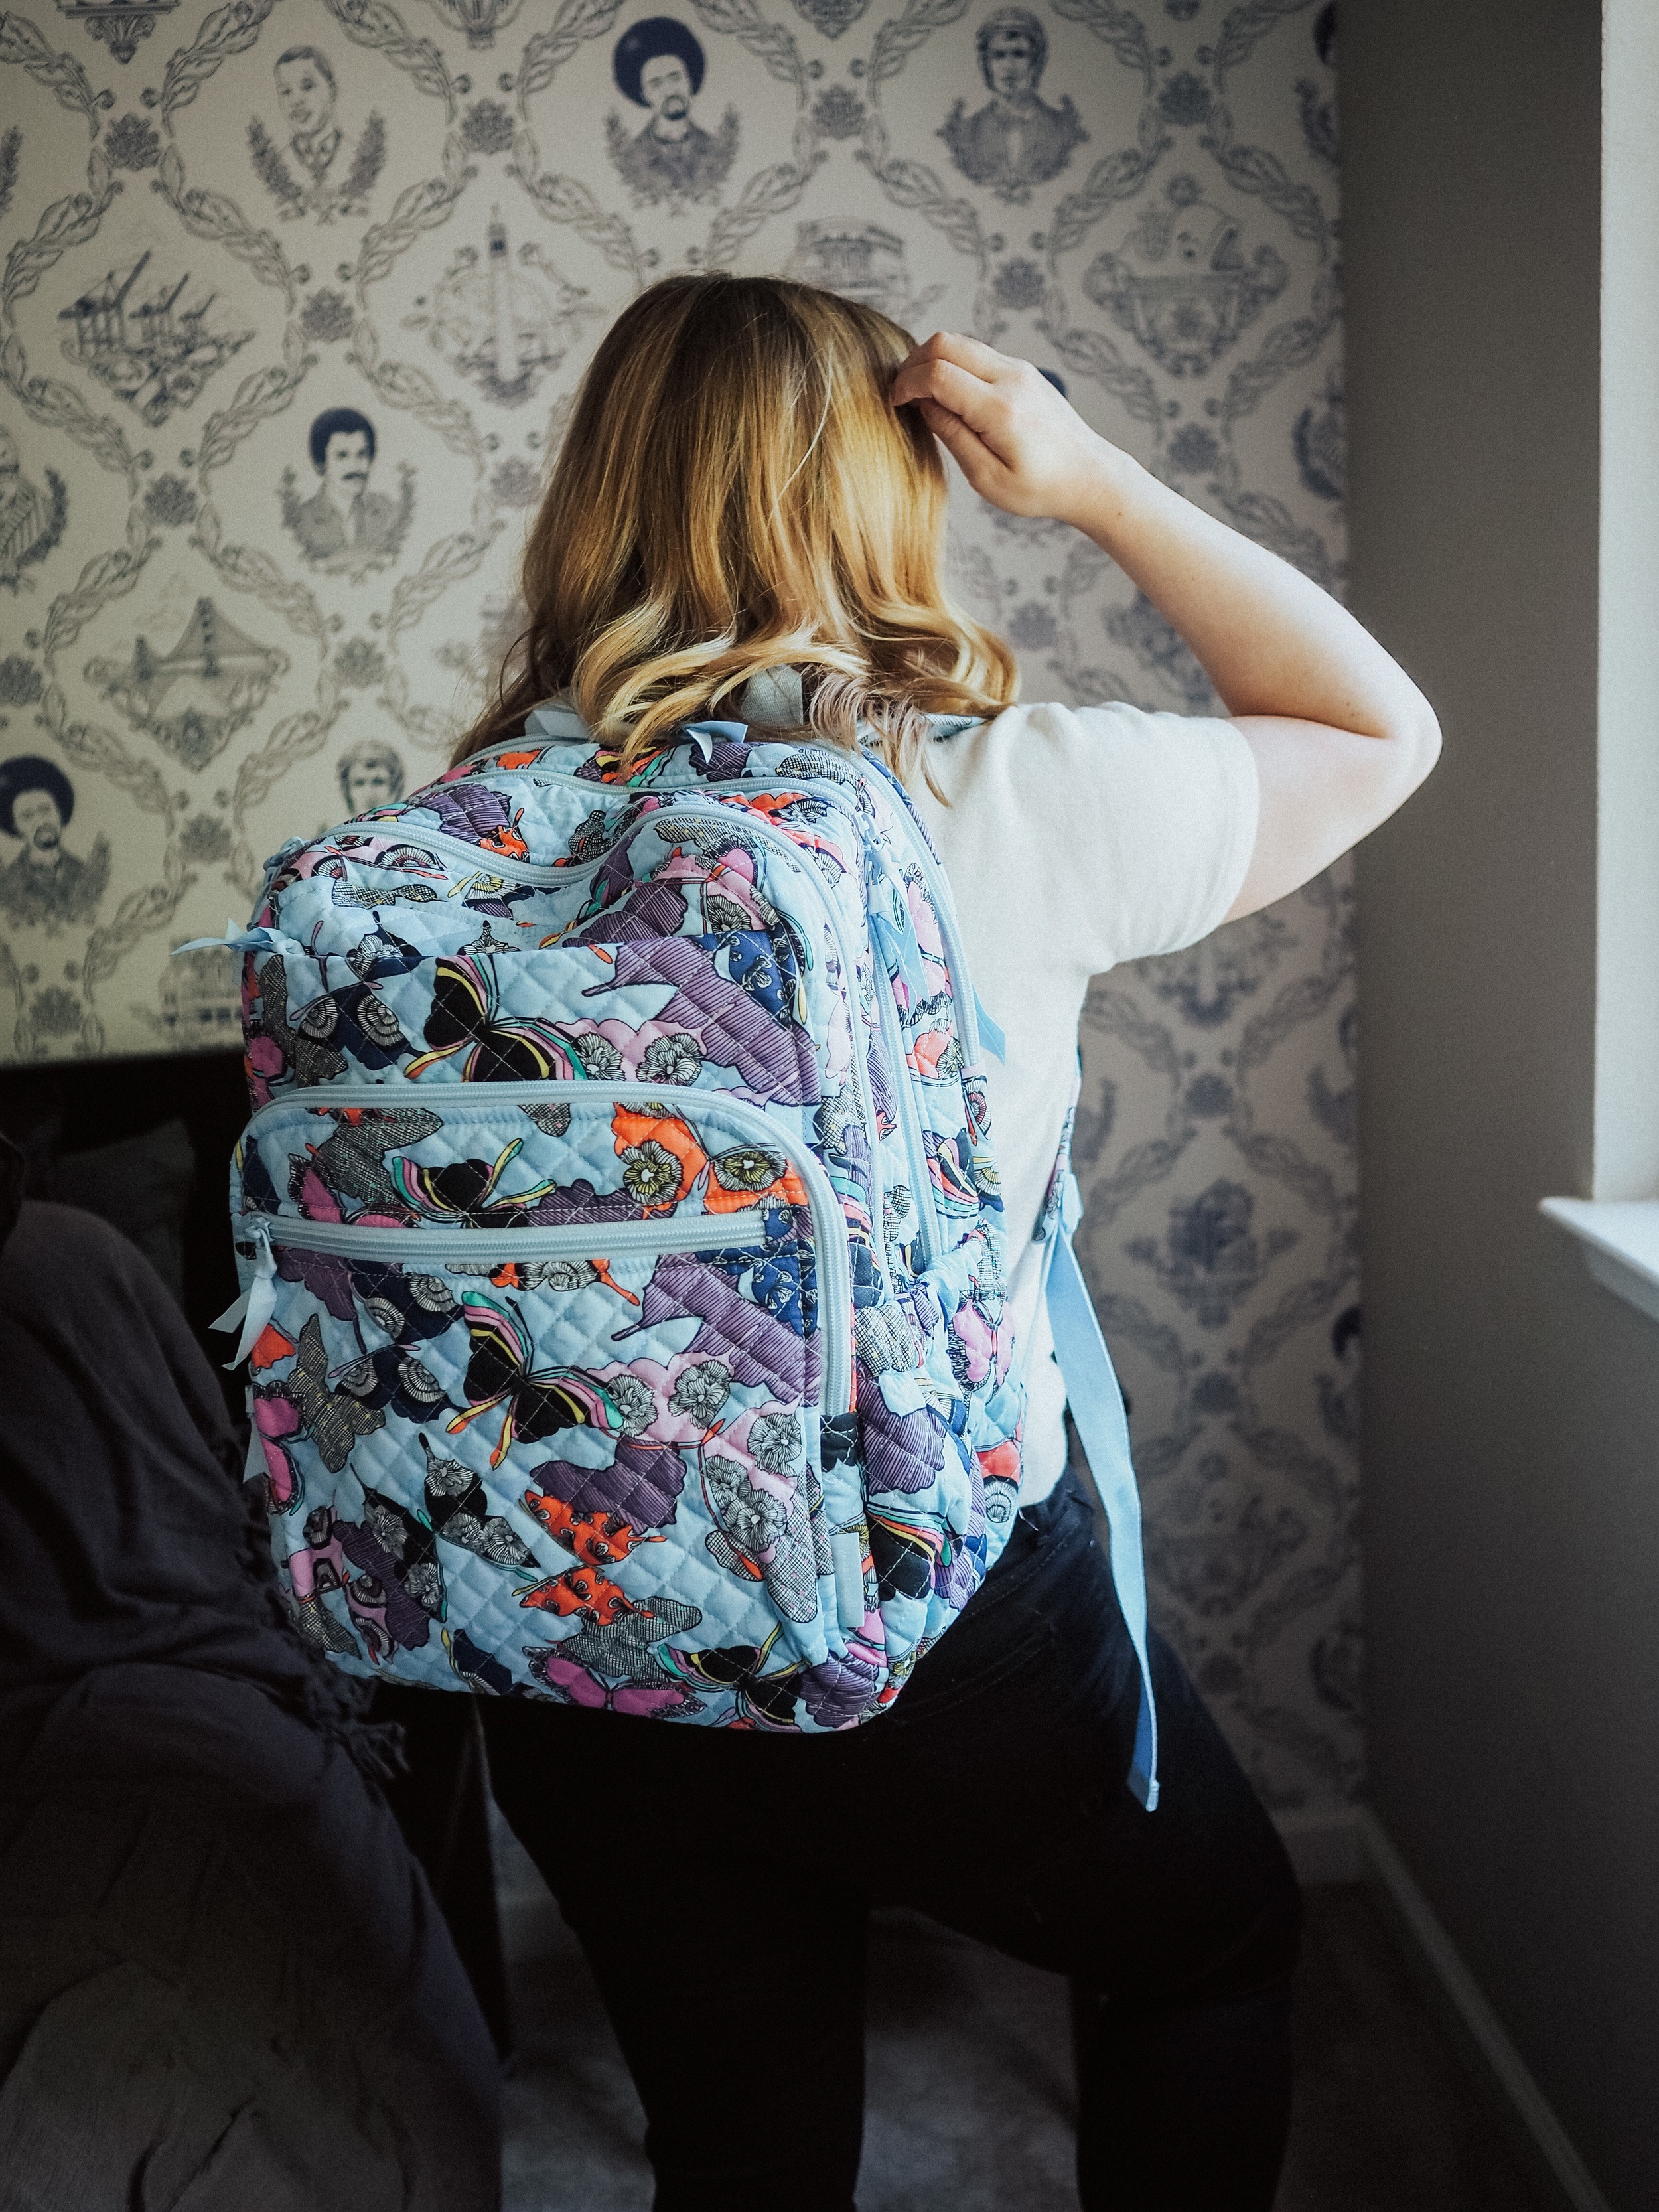 The Best Backpacks for Women - by Kelsey Boyanzhu